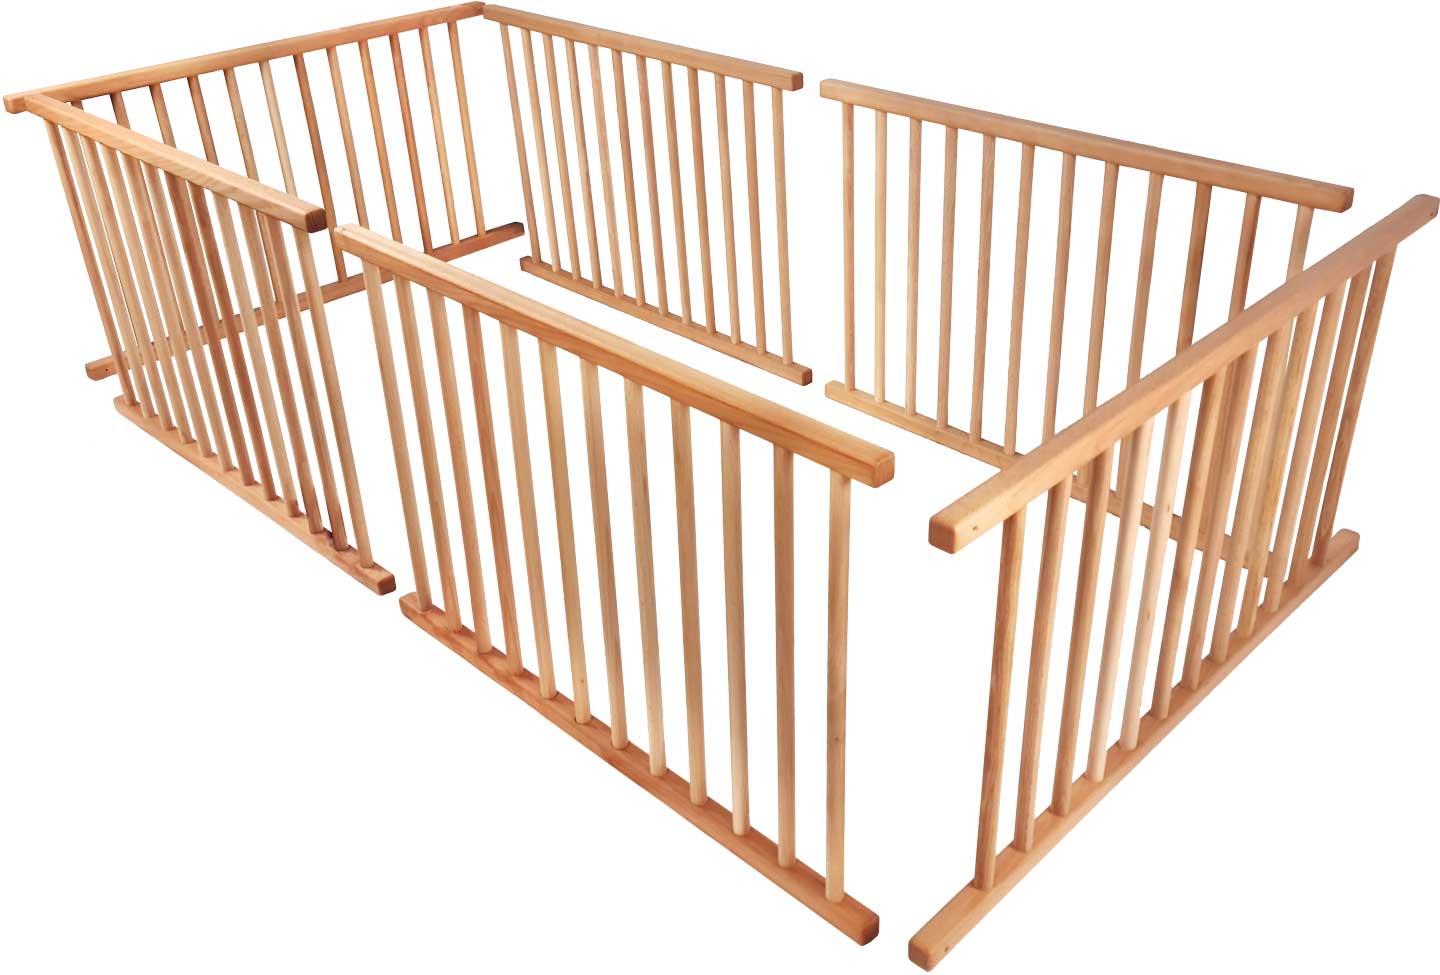 Porta per a nadons establerta per a tota la superfície tombada (llit tipus loft que creix amb el nen, llitera a la cantonada* o llitera al costat del llit*)